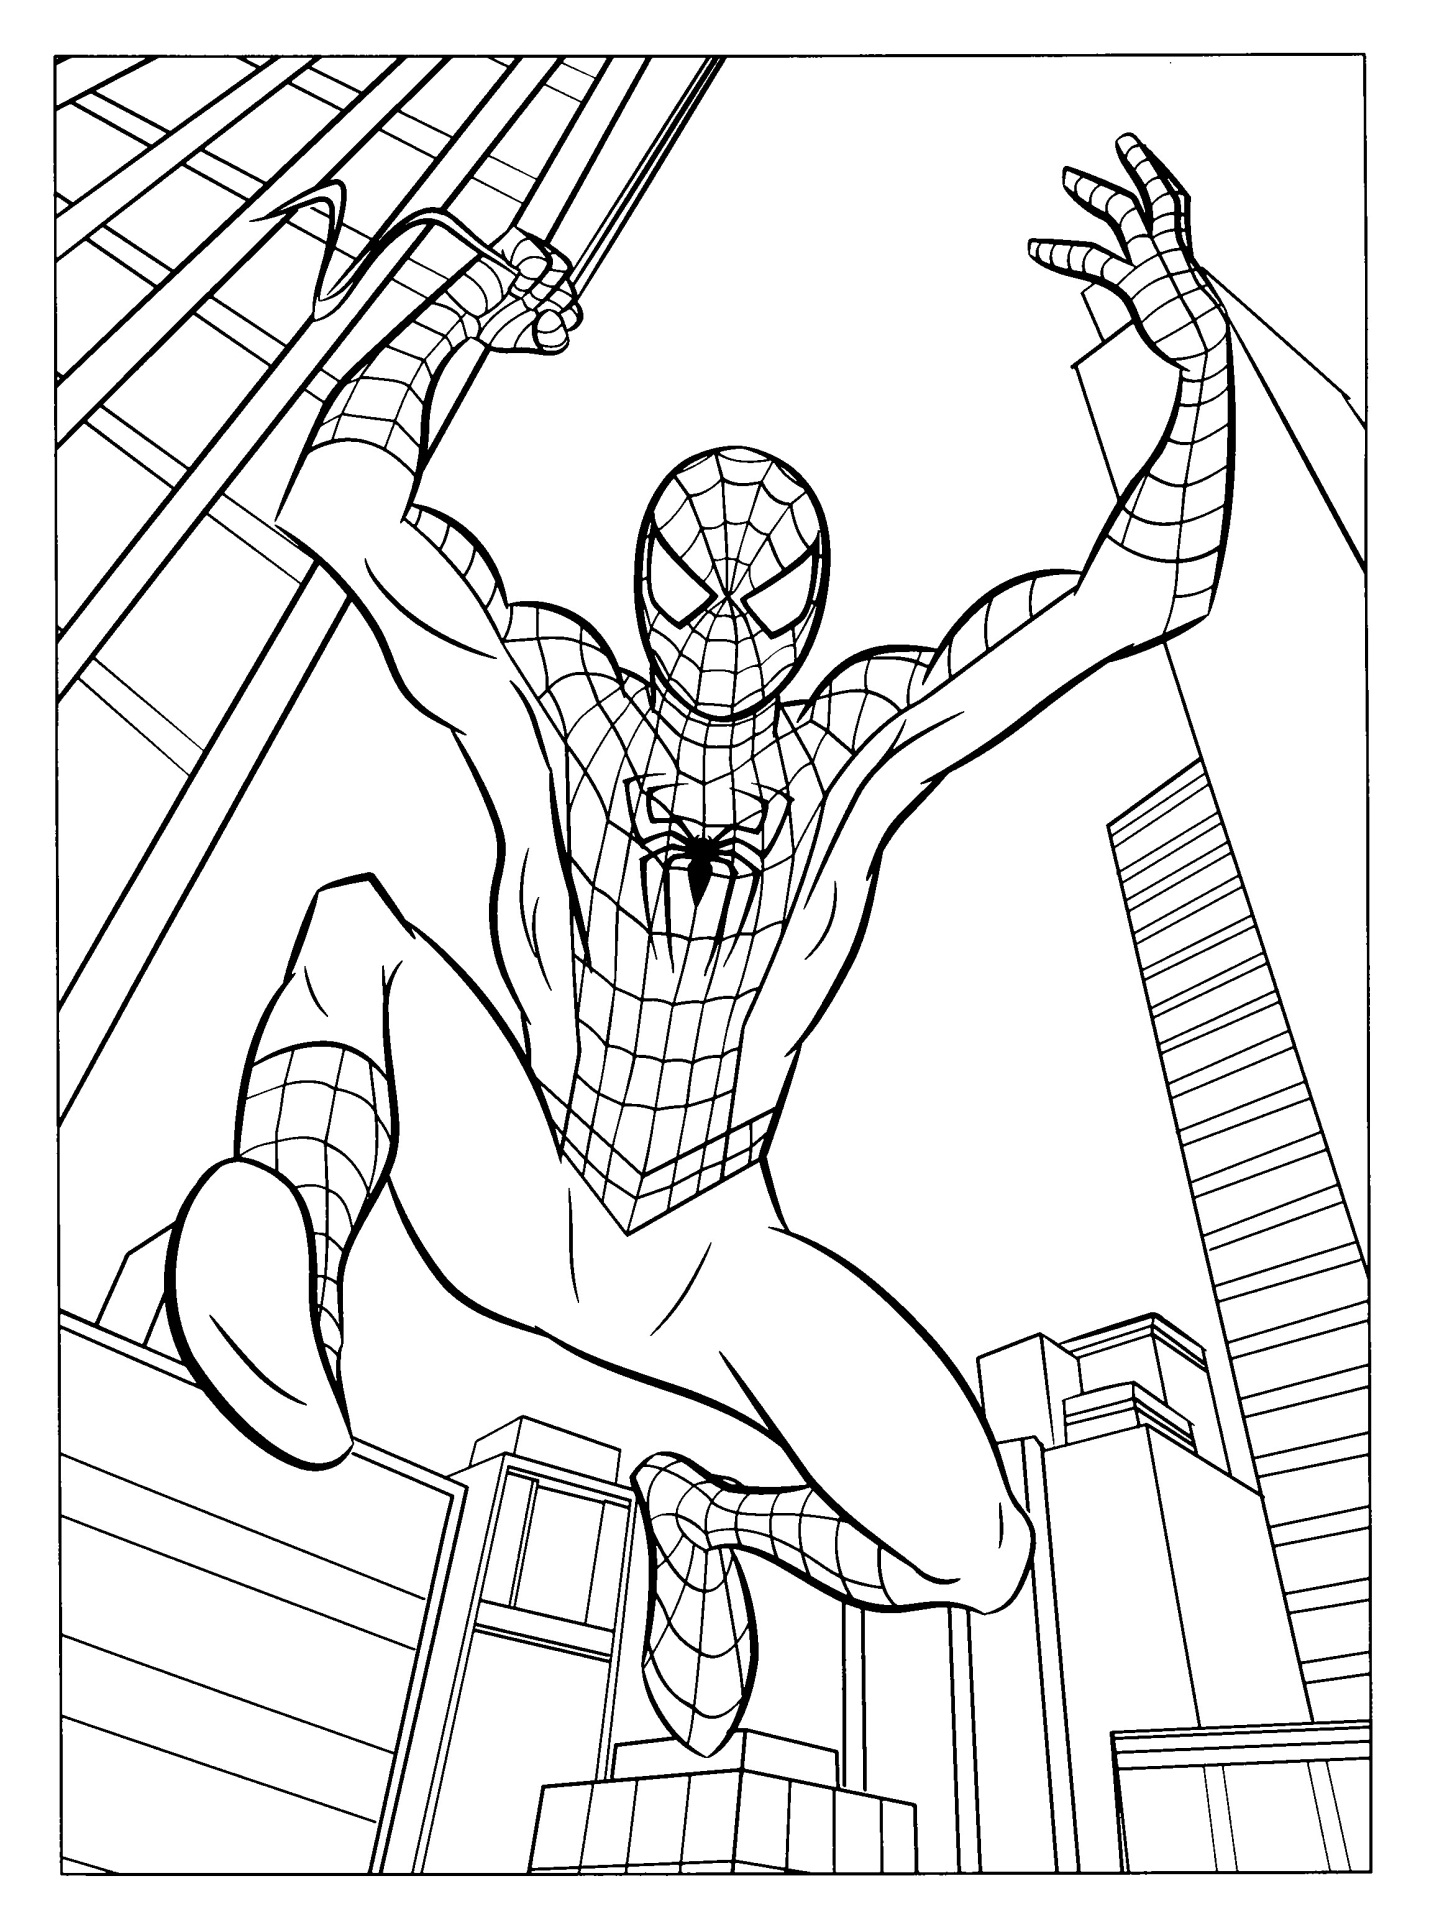 Tranh tô màu siêu anh hùng Spider Man hành động